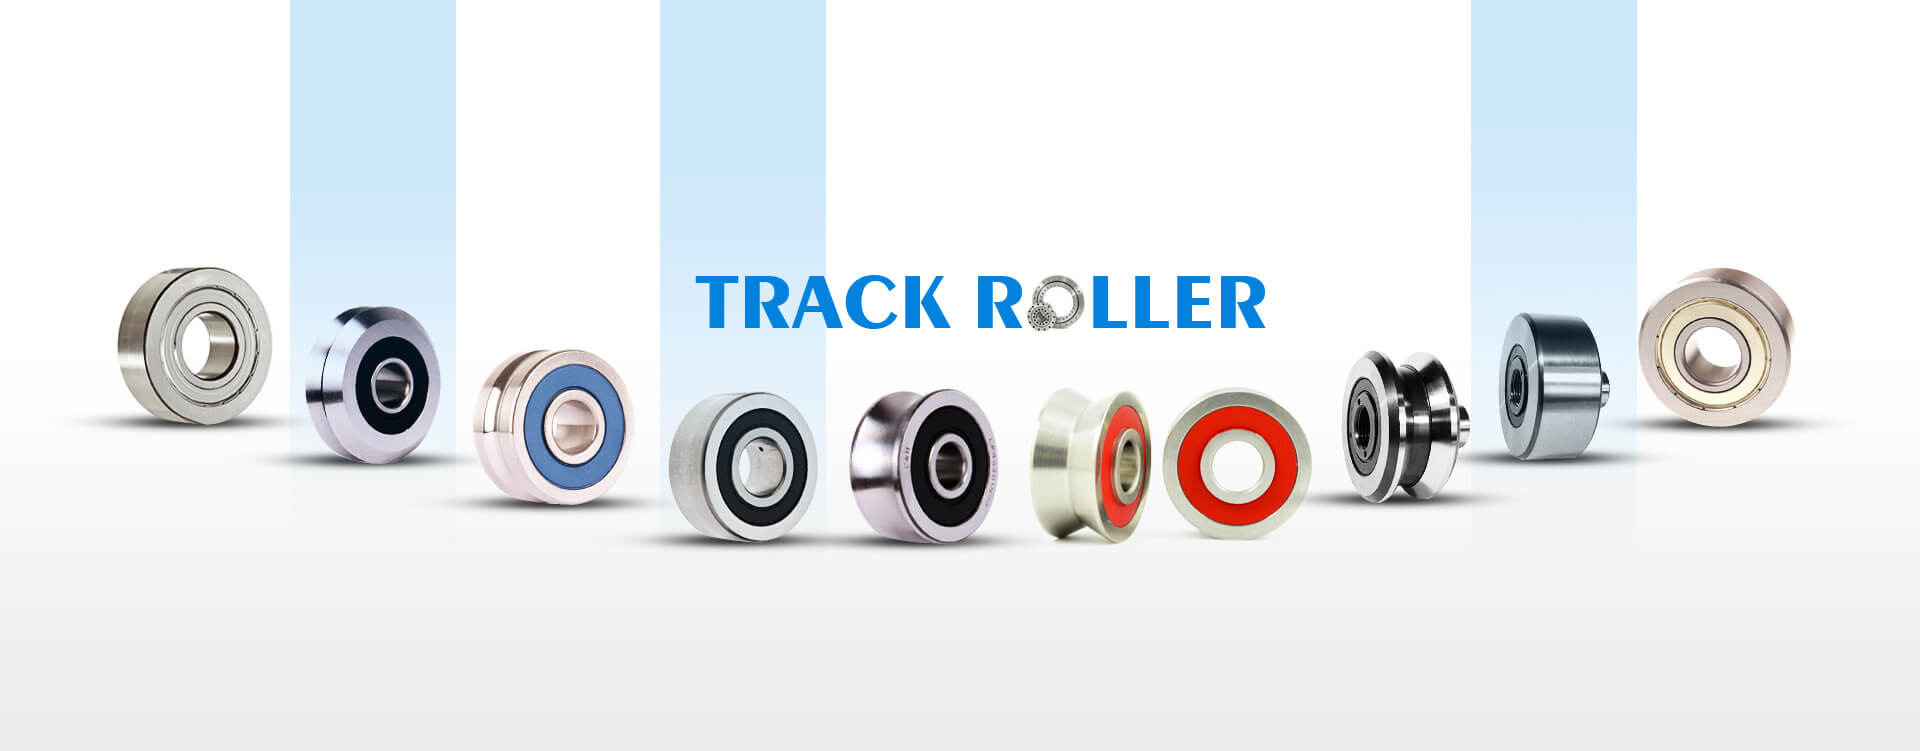 Track roller